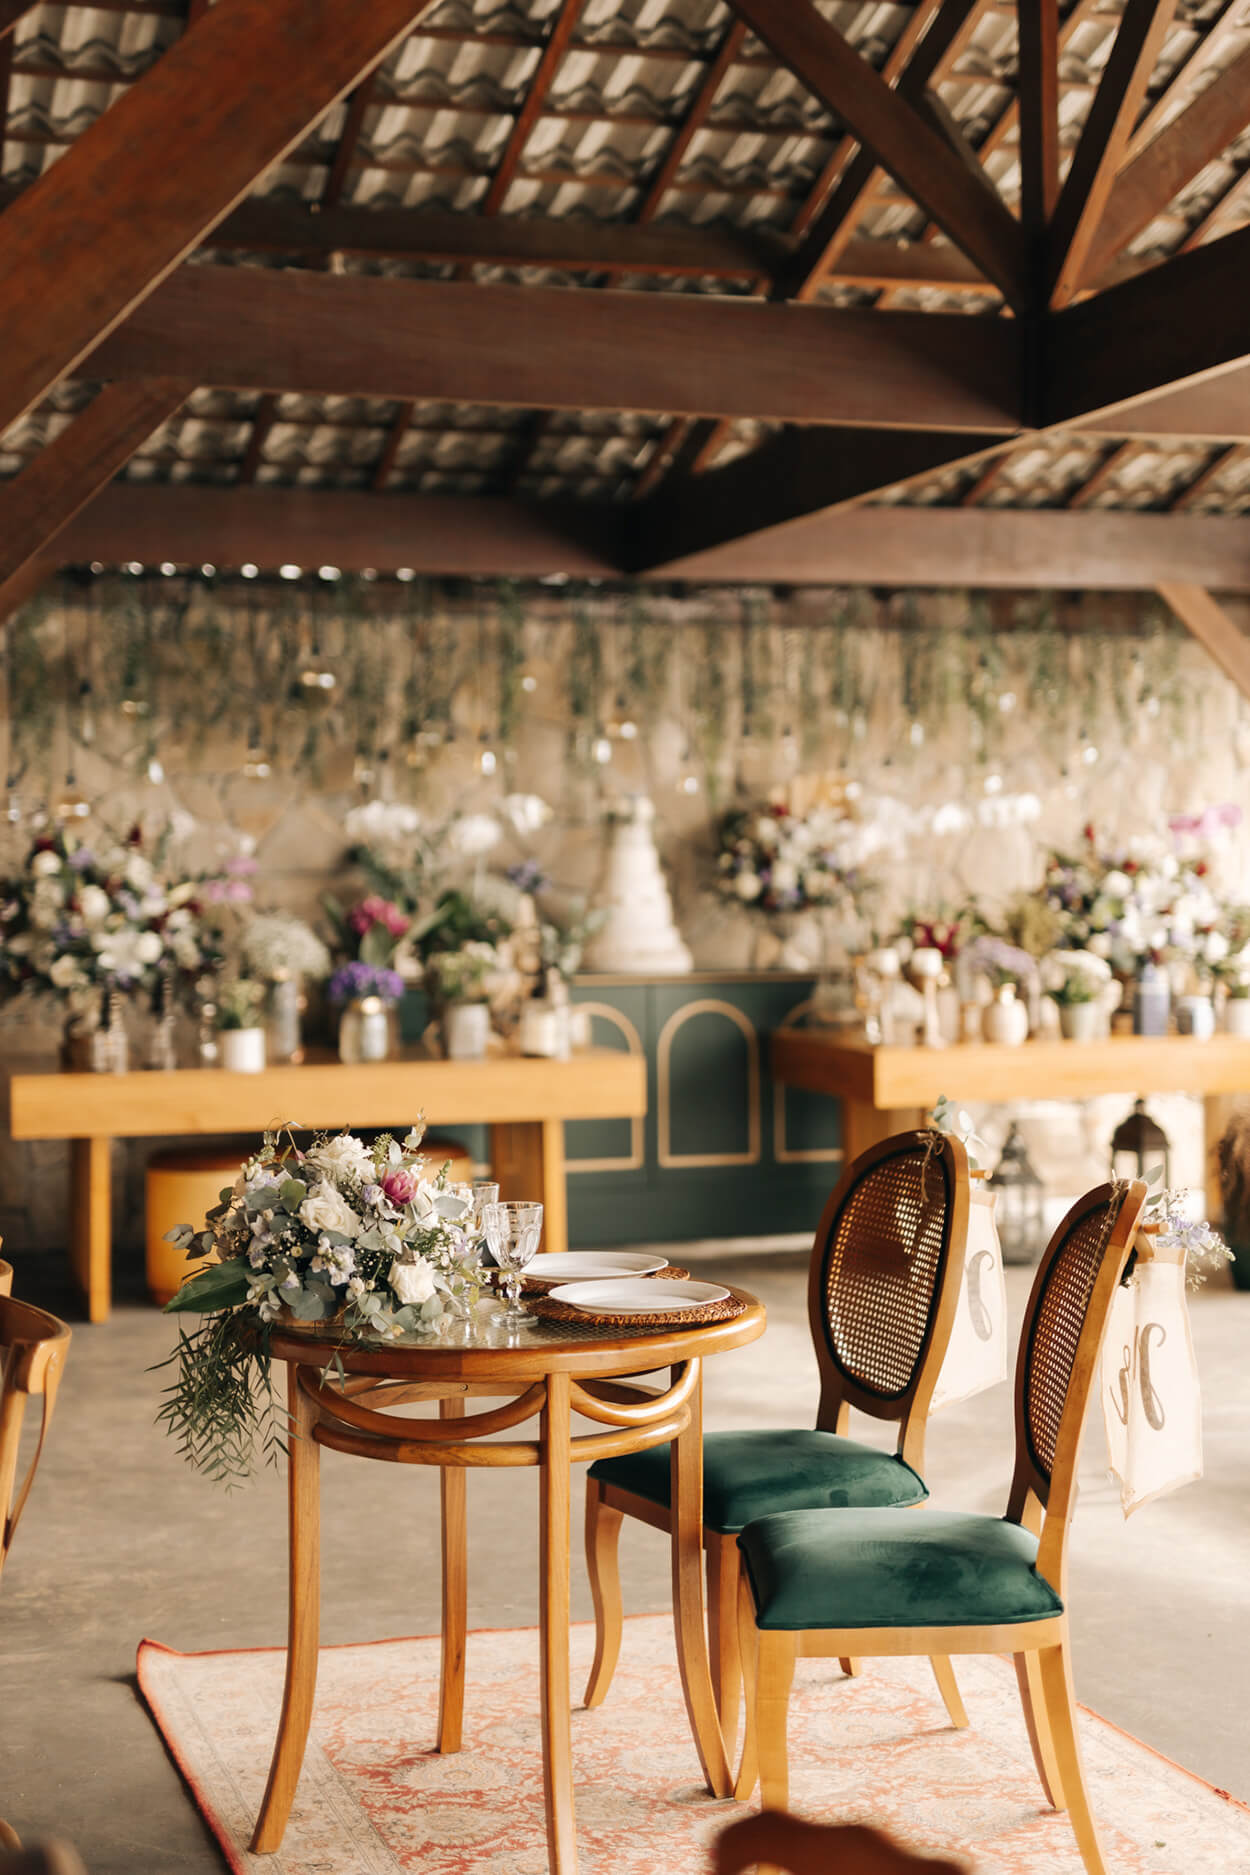 salão coberto com mesa redonda ppara os noivos com flores e ao fundo mesa verde com bolo de casamento e vários vasos com flores brancas rosas e lilás